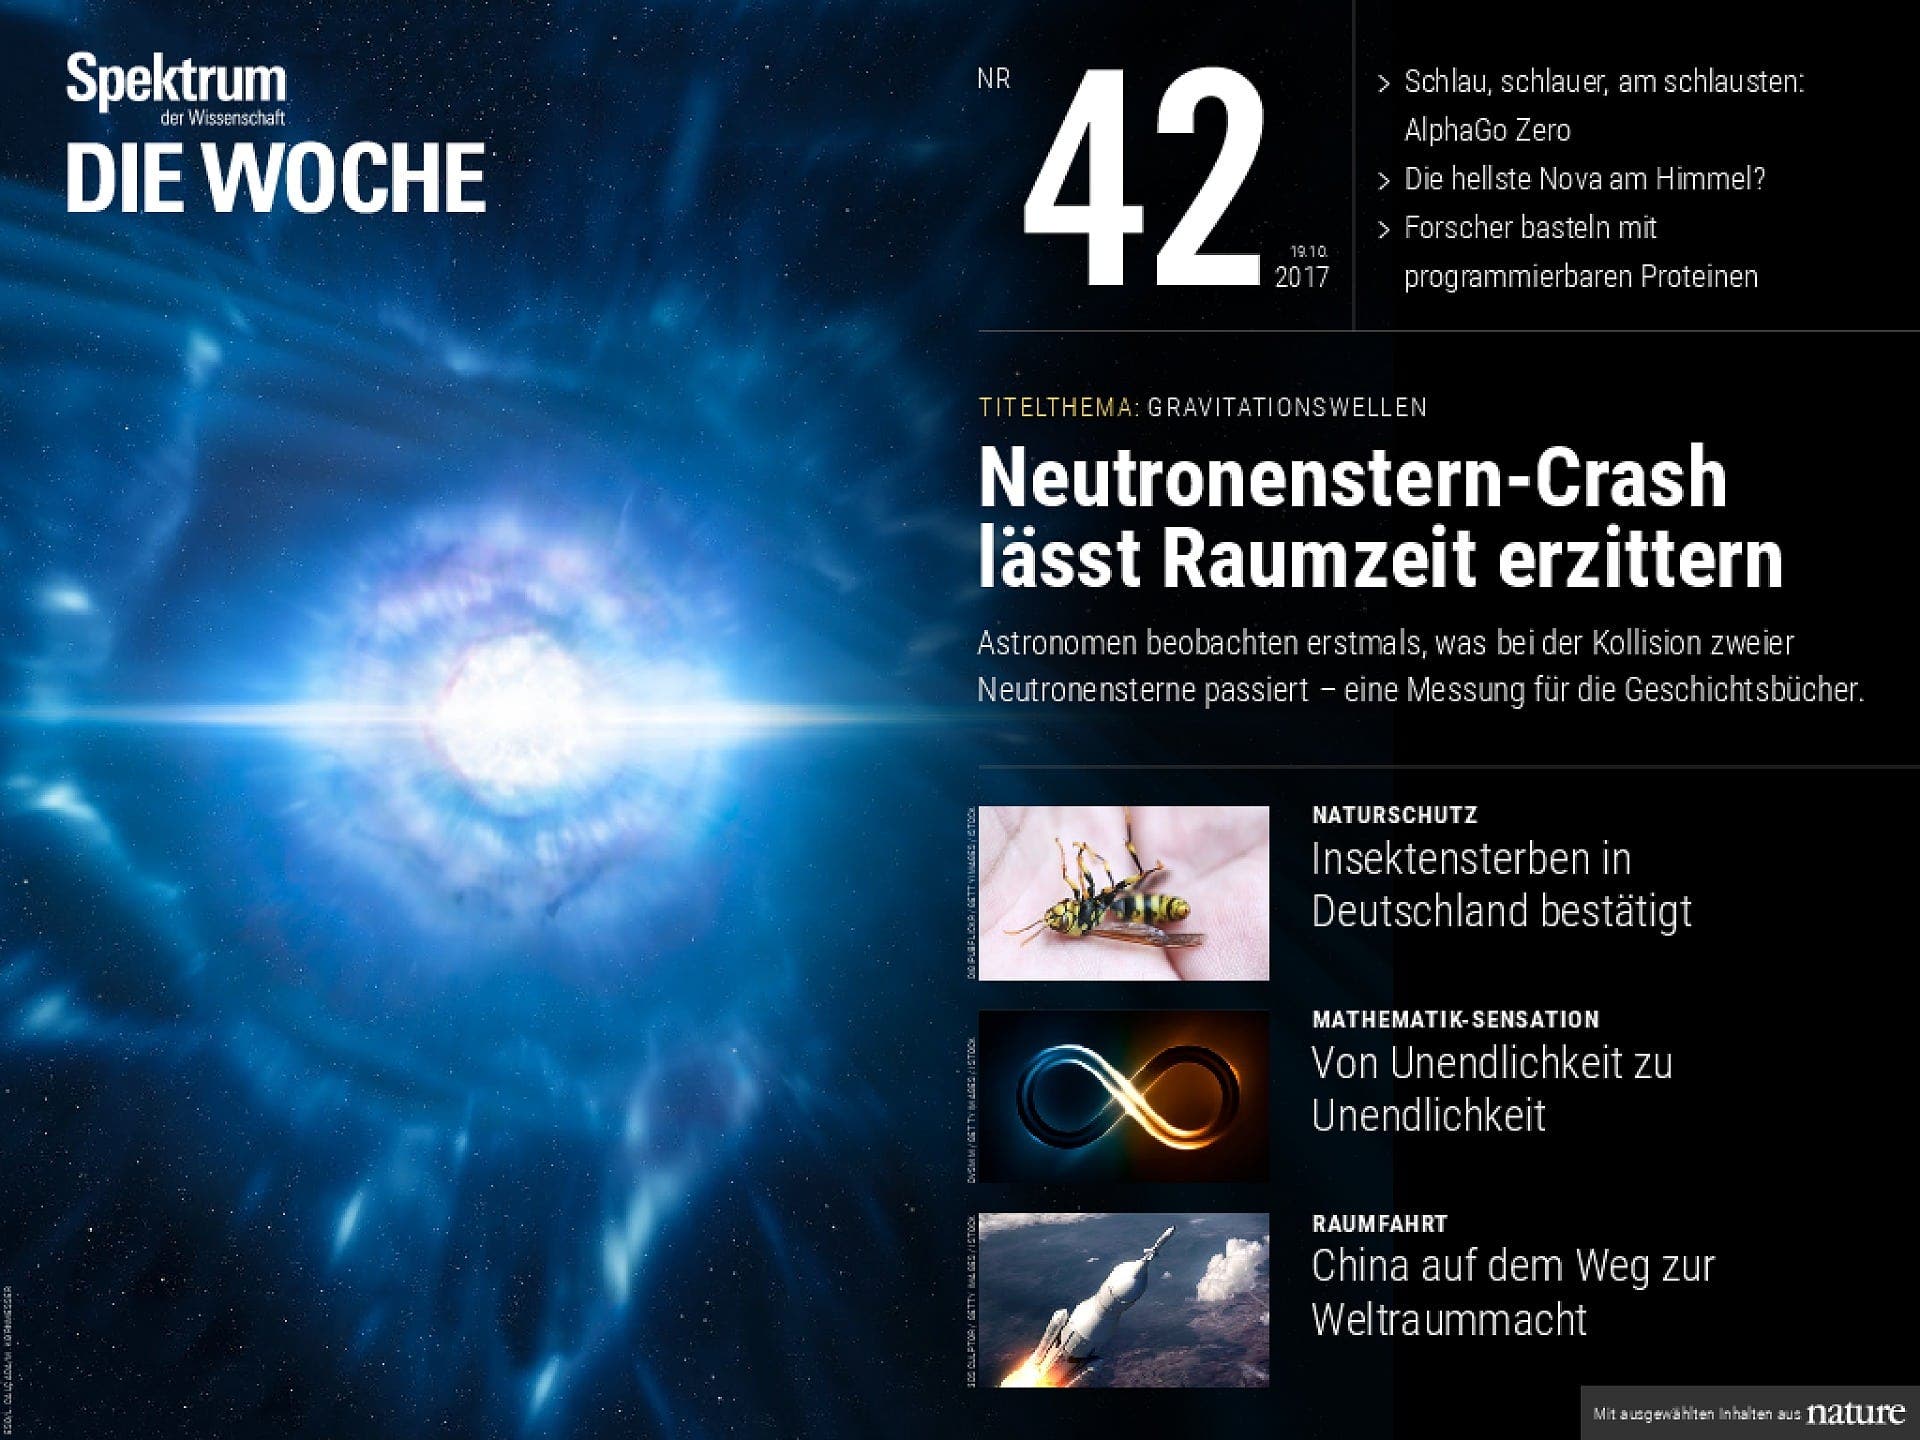 Neutronenstern-Crash lässt Raumzeit erzittern